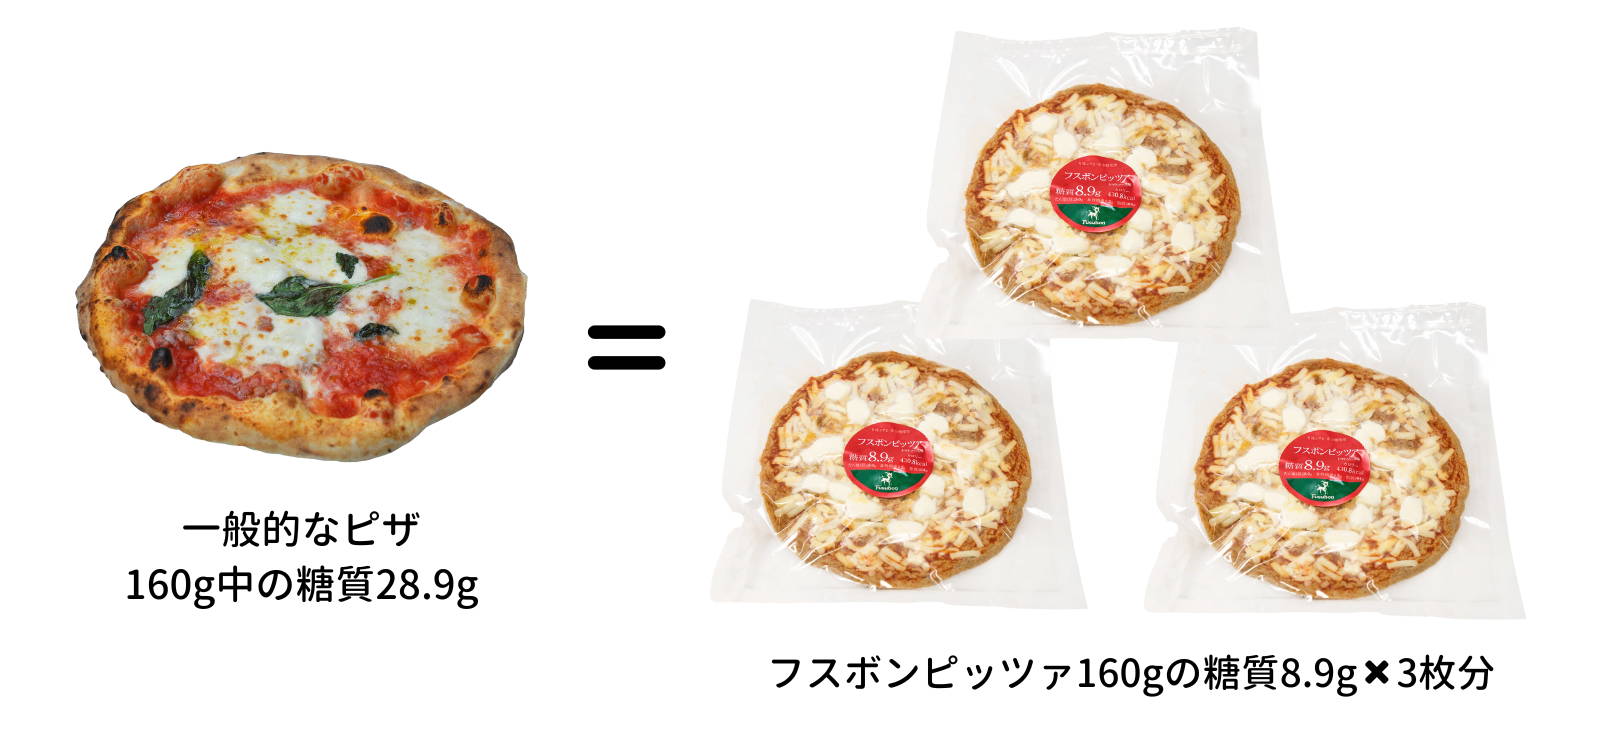 一般的なピザとフスボンピザの糖質の比較